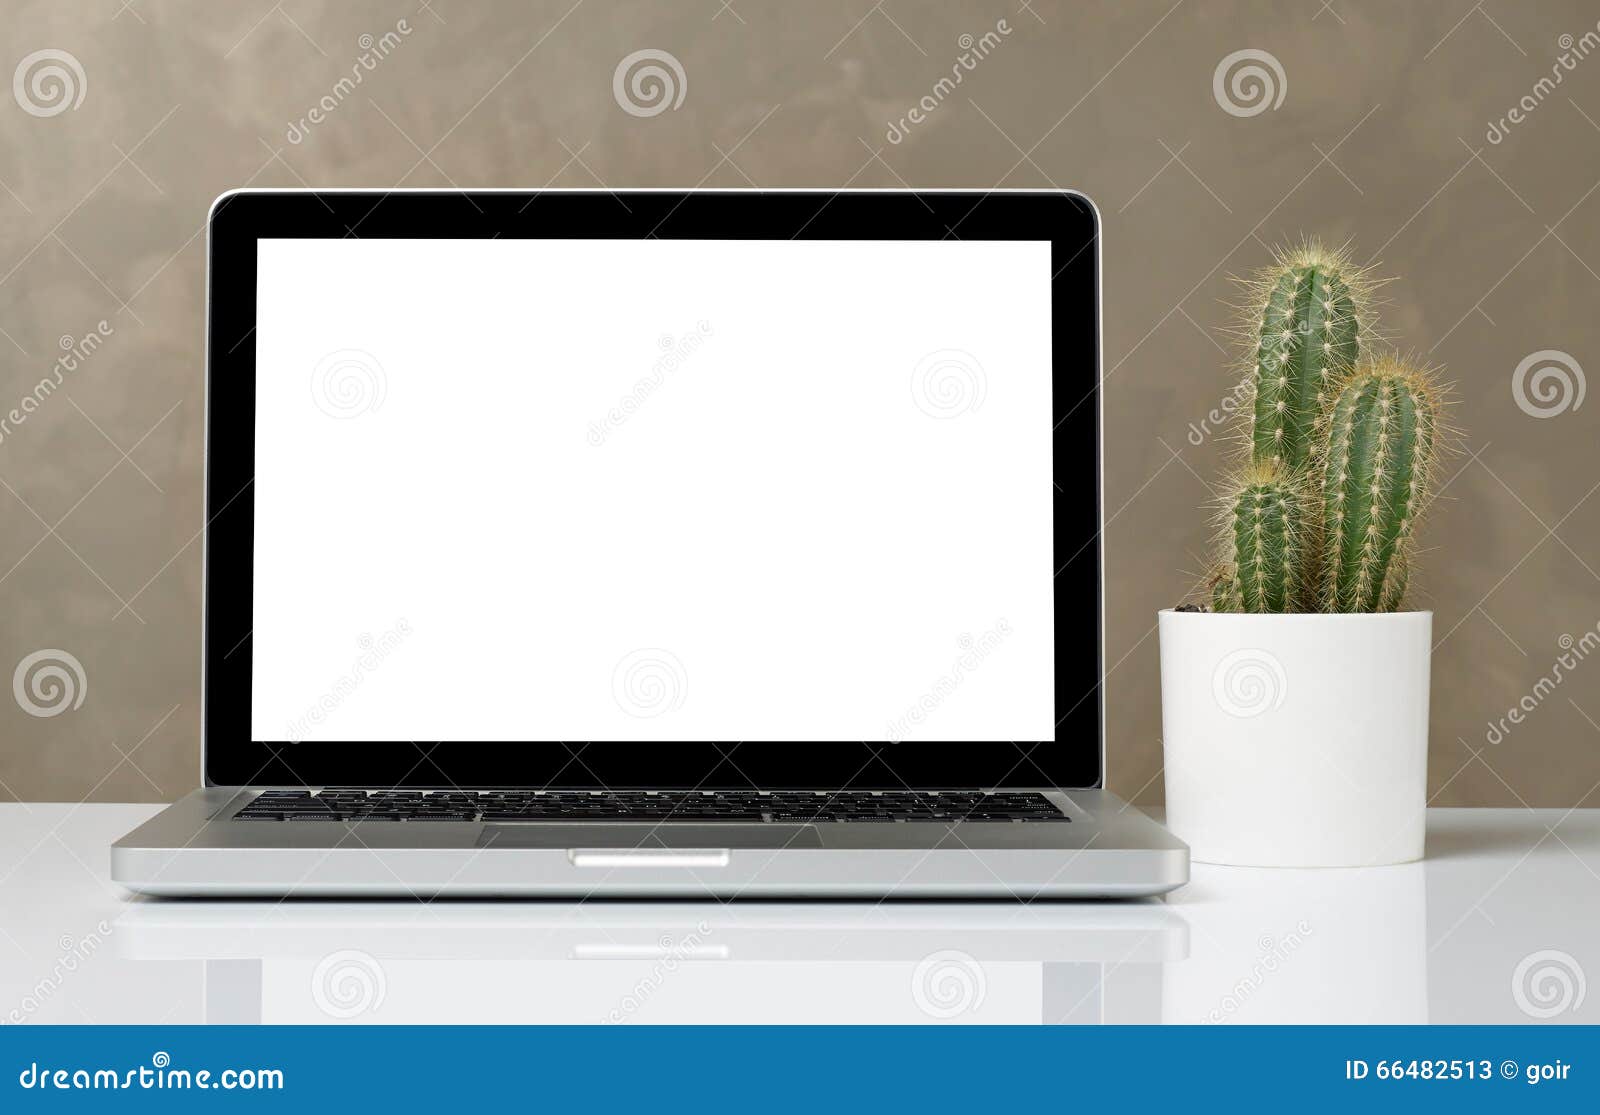 Laptop und Kaktus. Laptop mit leerem Bildschirm und Kaktus auf Schreibtisch